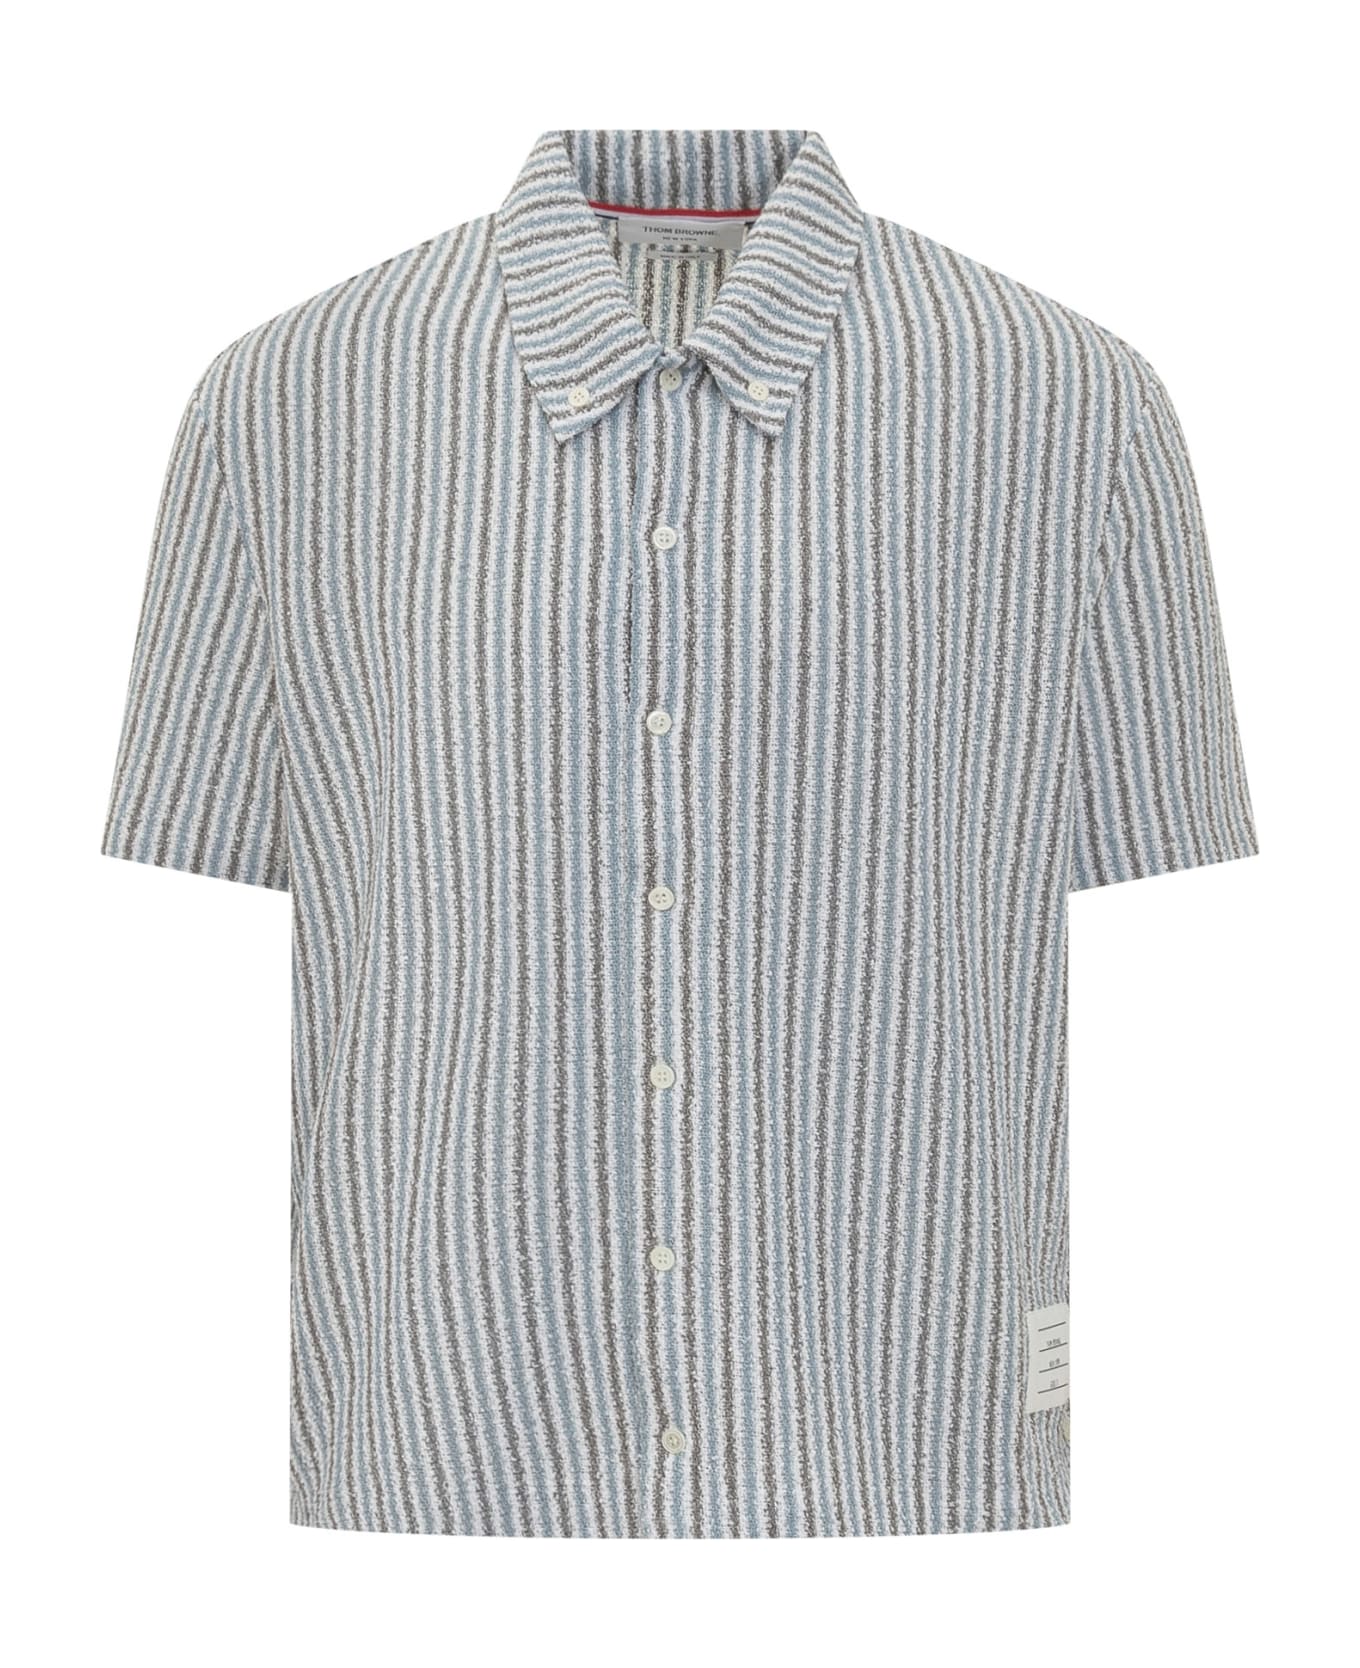 Thom Browne Rwb Striped Shirt - SEASONAL MULTI シャツ